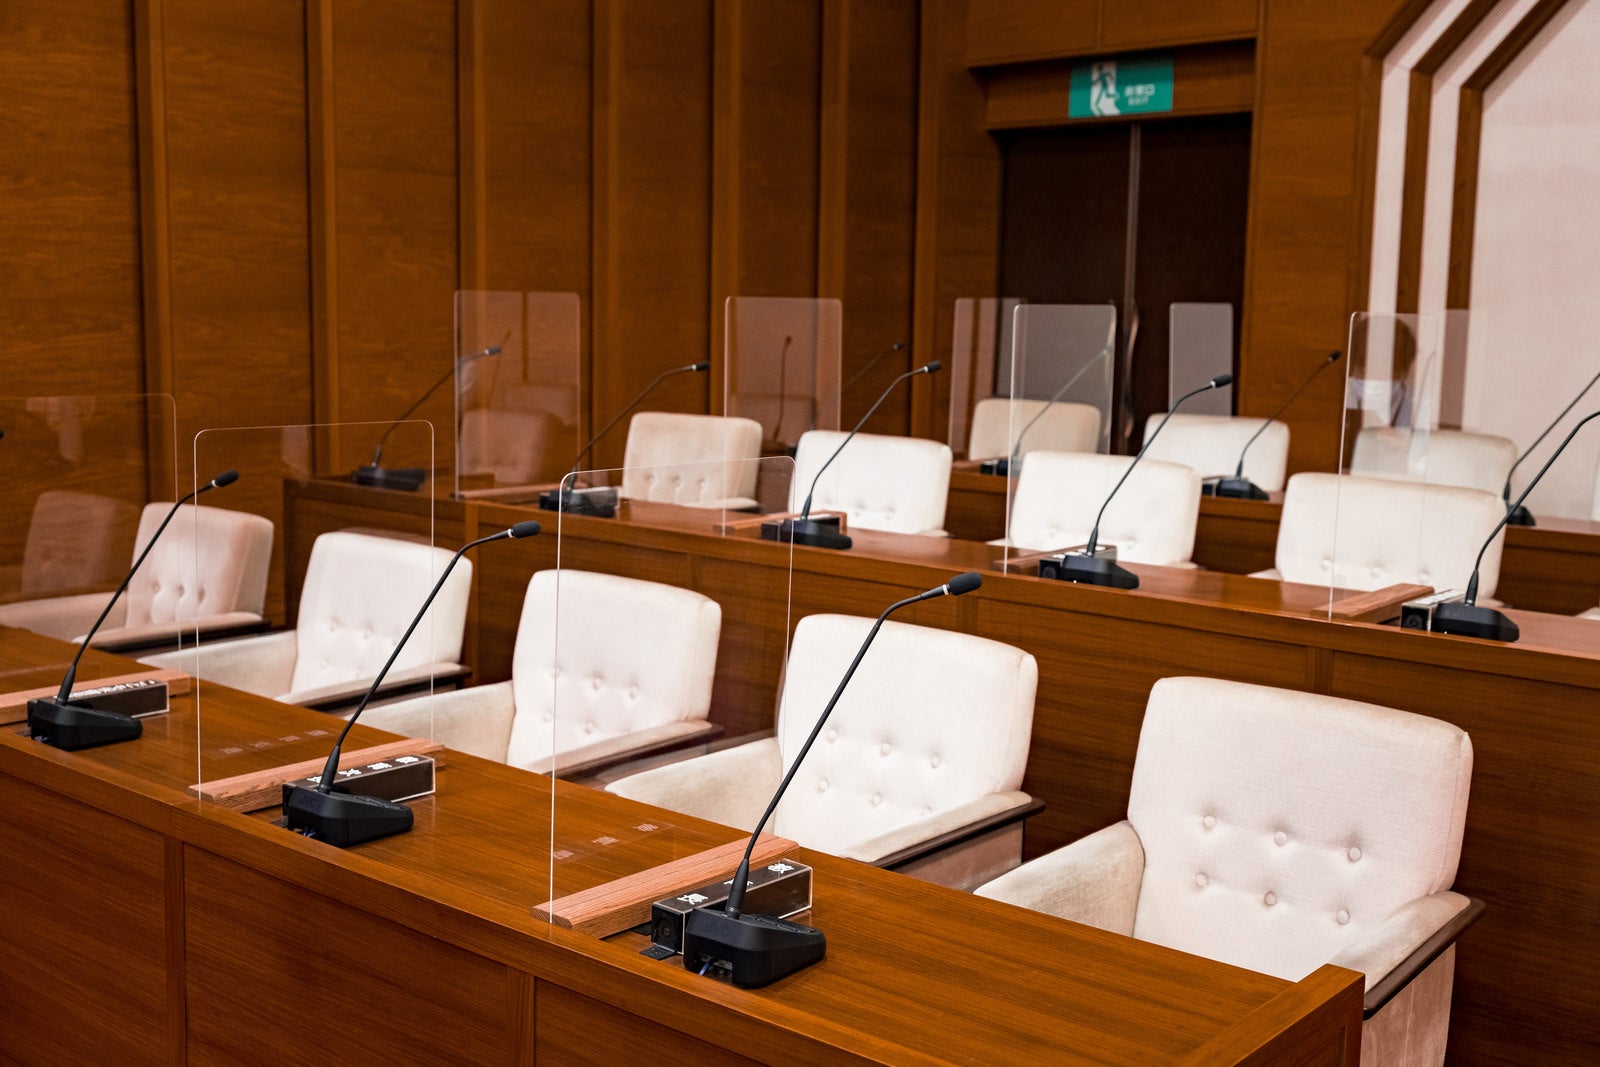 「氏名標を倒した状態の津山市議会の理事者側座席、教育長席など」の写真